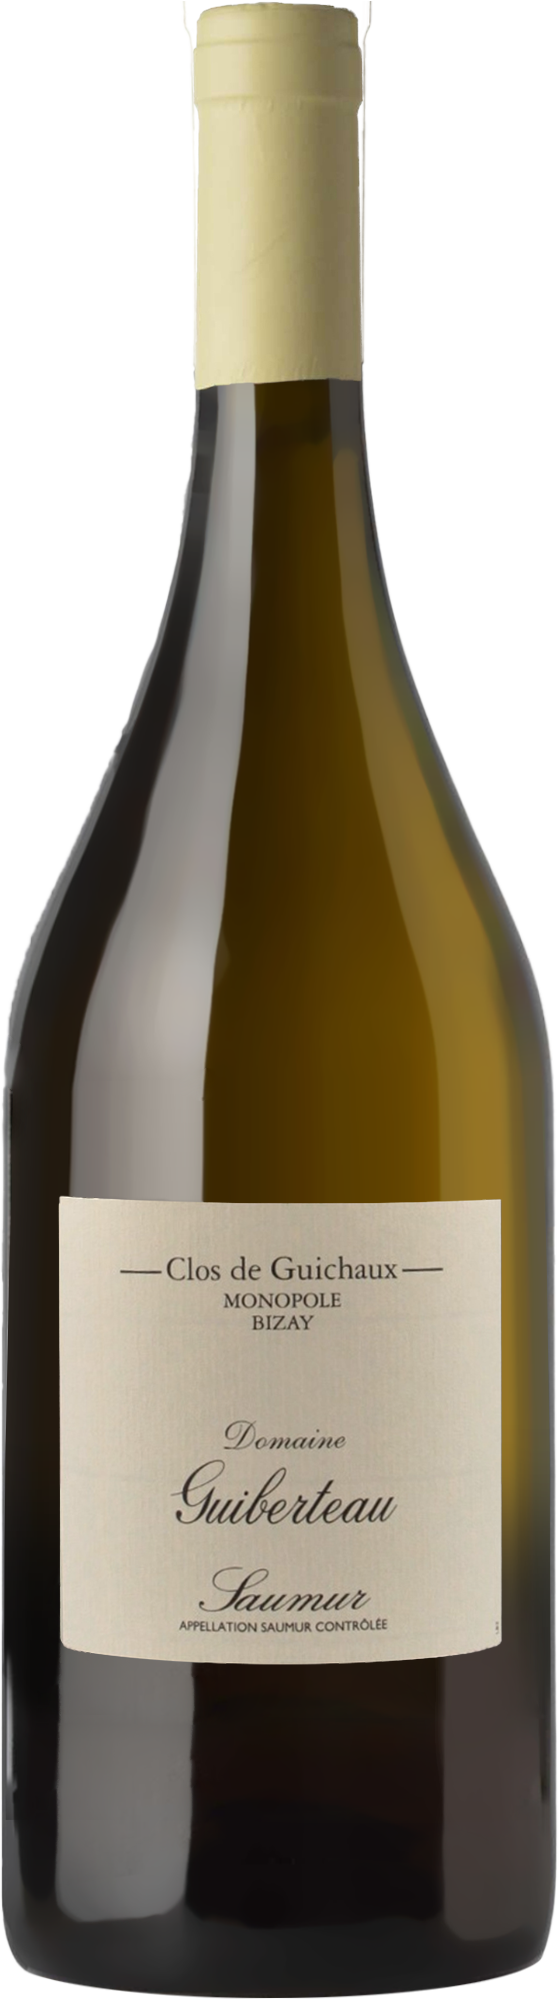 Domaine Guiberteau Saumur Clos de Guichaux Blanc 2020 (1500ml)